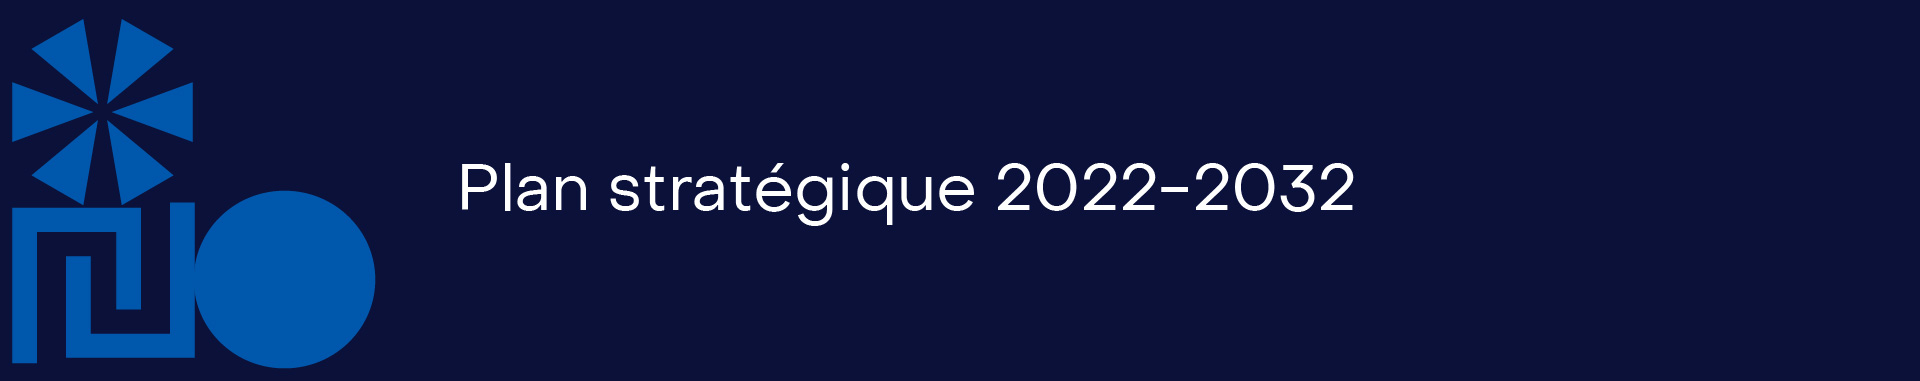 Plan stratégique 2022-2032